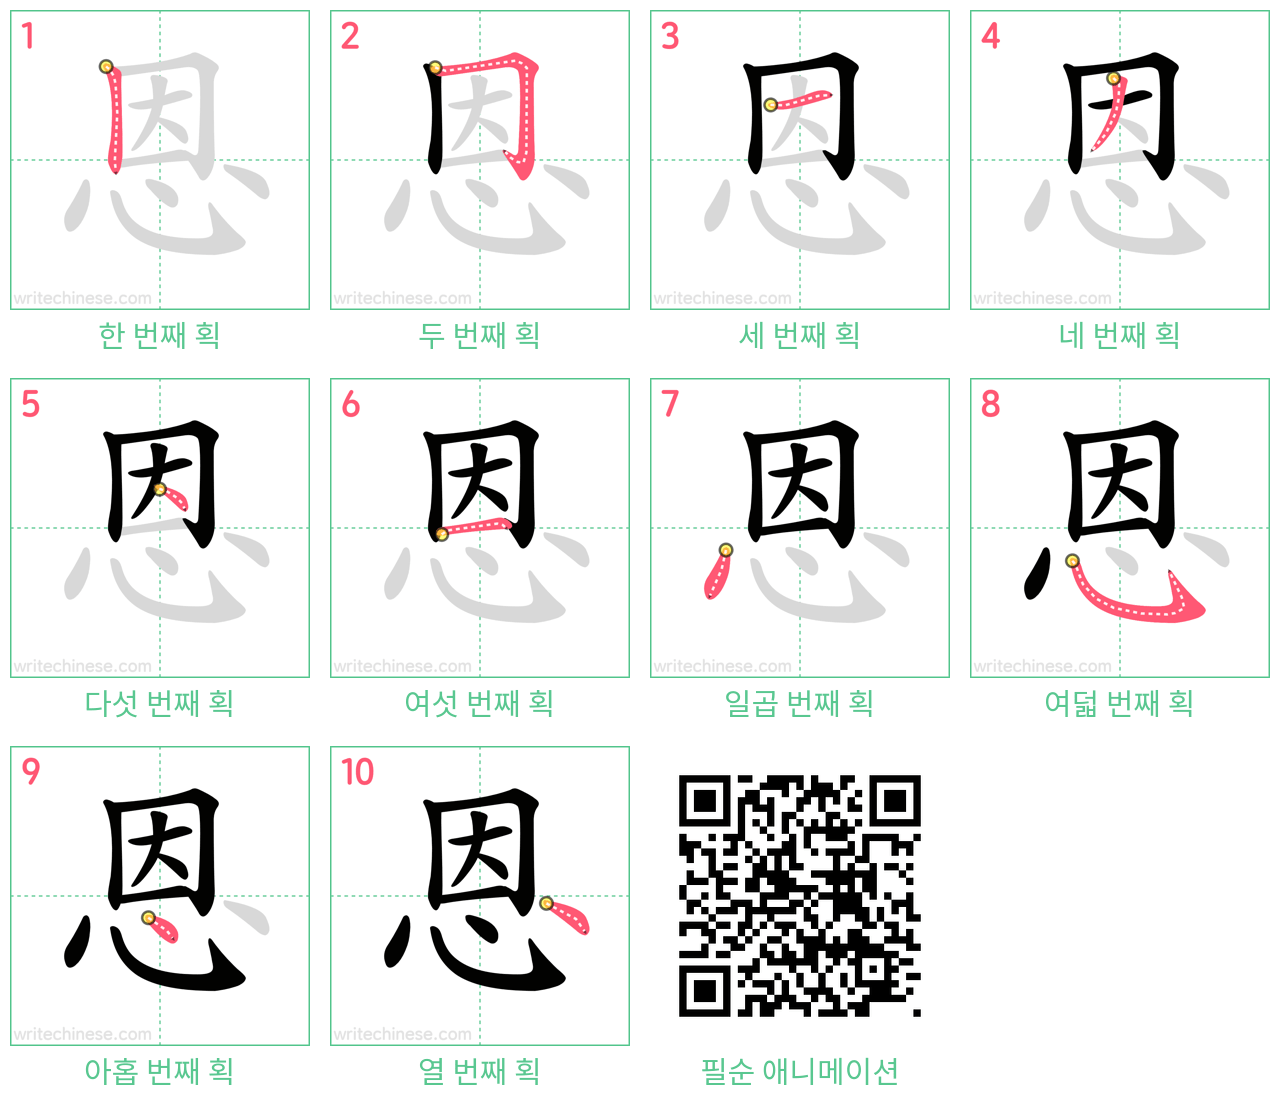 恩 step-by-step stroke order diagrams